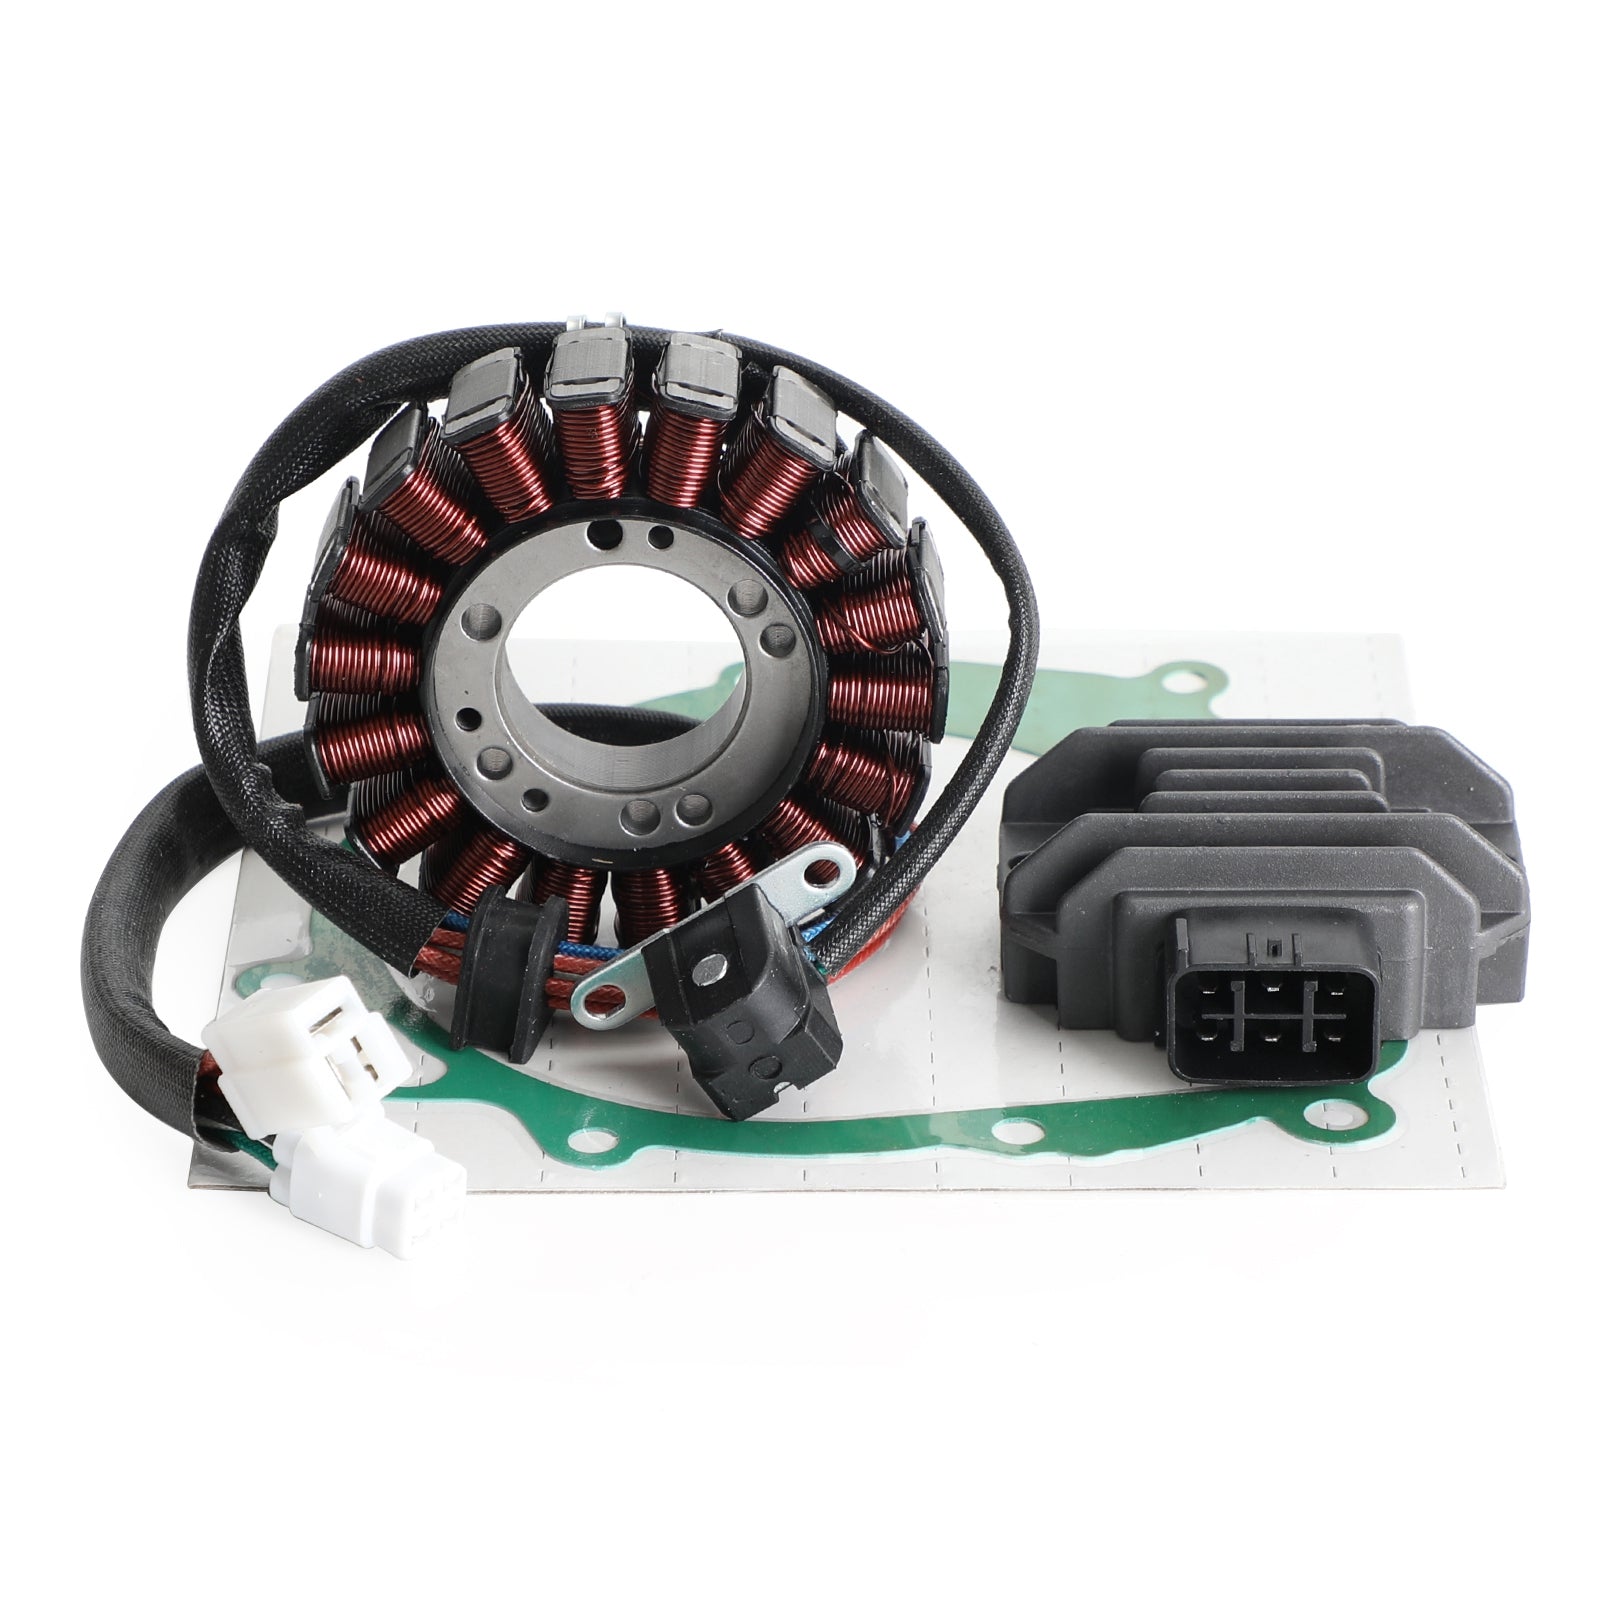 Magneto Stator+Voltage Rectifier+Gasket For Suzuki LTZ400 Quadsport Z400 03-08 Generic Fedex